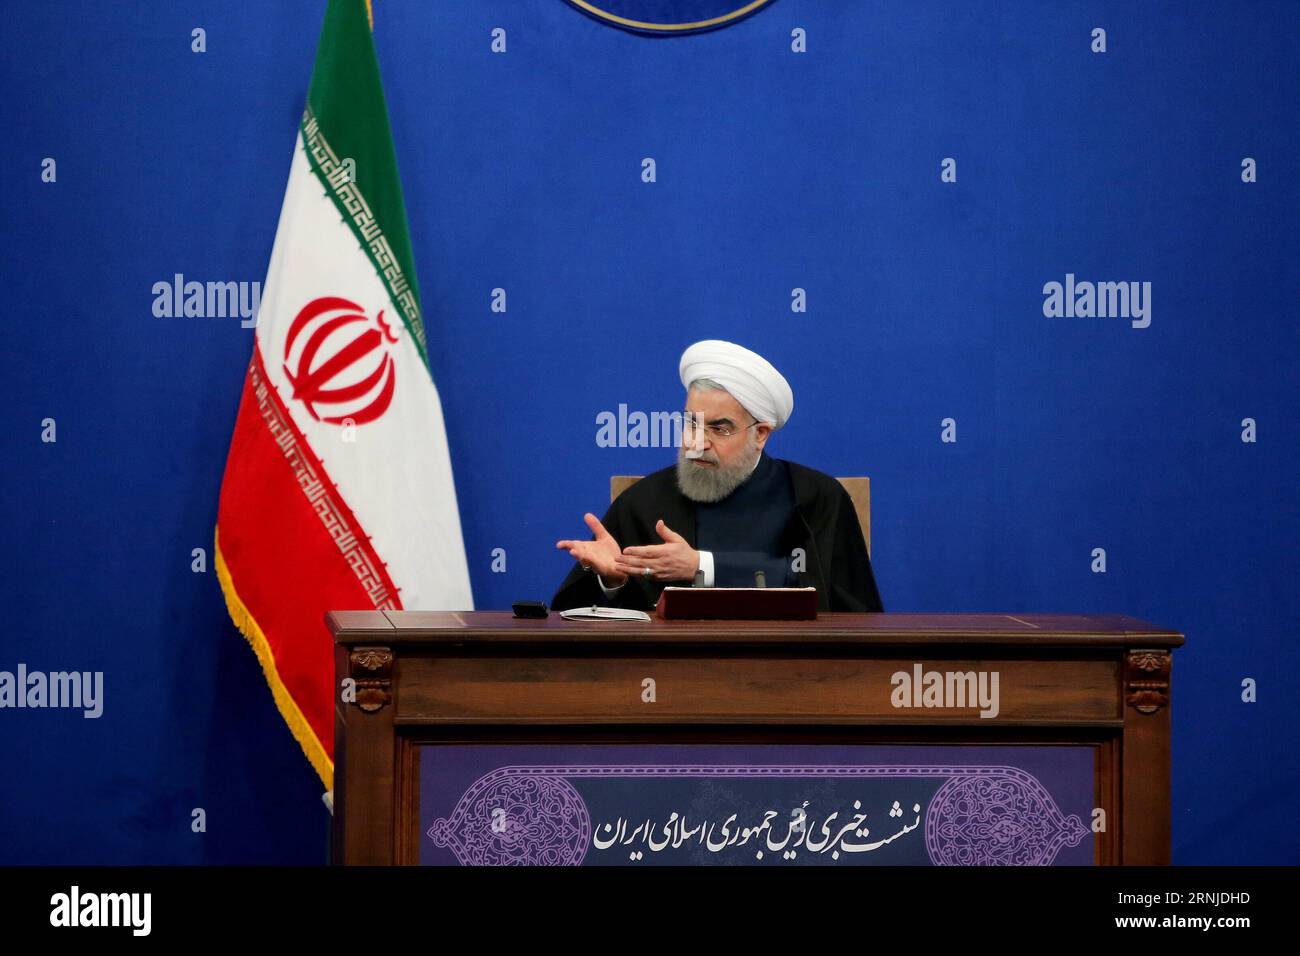 THERAN, le 17 janvier 2017 -- le président iranien Hassan Rouhani prend la parole lors d'une conférence de presse à Téhéran, en Iran, le 17 janvier 2017. Rouhani a déclaré que l’Iran n’accepterait pas une révision de son accord nucléaire international, ont rapporté mercredi les médias locaux. L accord nucléaire international, connu sous le nom de Plan d action global conjoint (JCPOA), a résolu la question nucléaire controversée de Téhéran qui dure depuis une décennie. (gl) IRAN-TÉHÉRAN-HASSAN ROUHANI-NEWS CONFERENCE AhmadxHalabisaz PUBLICATIONxNOTxINxCHN THERAN Jan 17 2017 le président iranien Hassan Rouhani prend la parole lors d'une conférence de presse à TÉHÉRAN Iran LE 17 2017 janvier Rouhani Banque D'Images